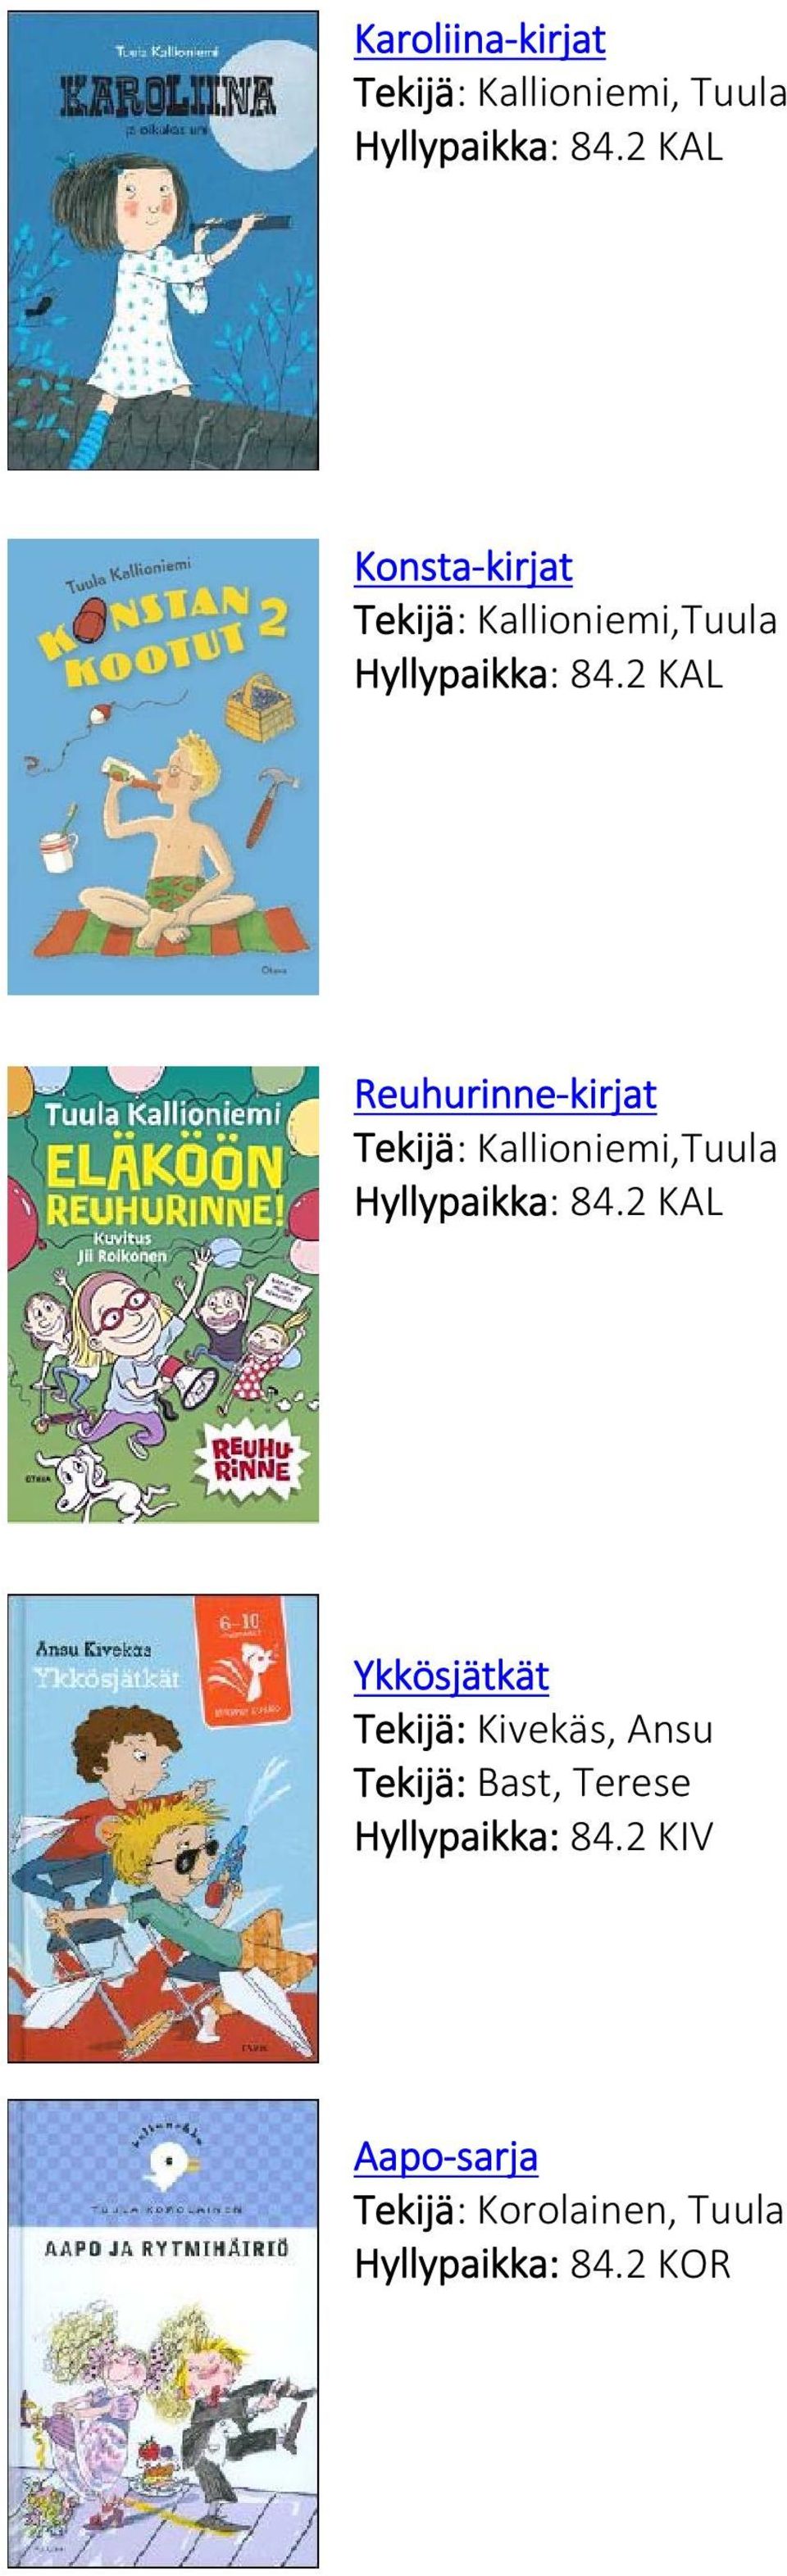 2 KAL Reuhurinne kirjat Tekijä: Kallioniemi,Tuula Hyllypaikka: 84.